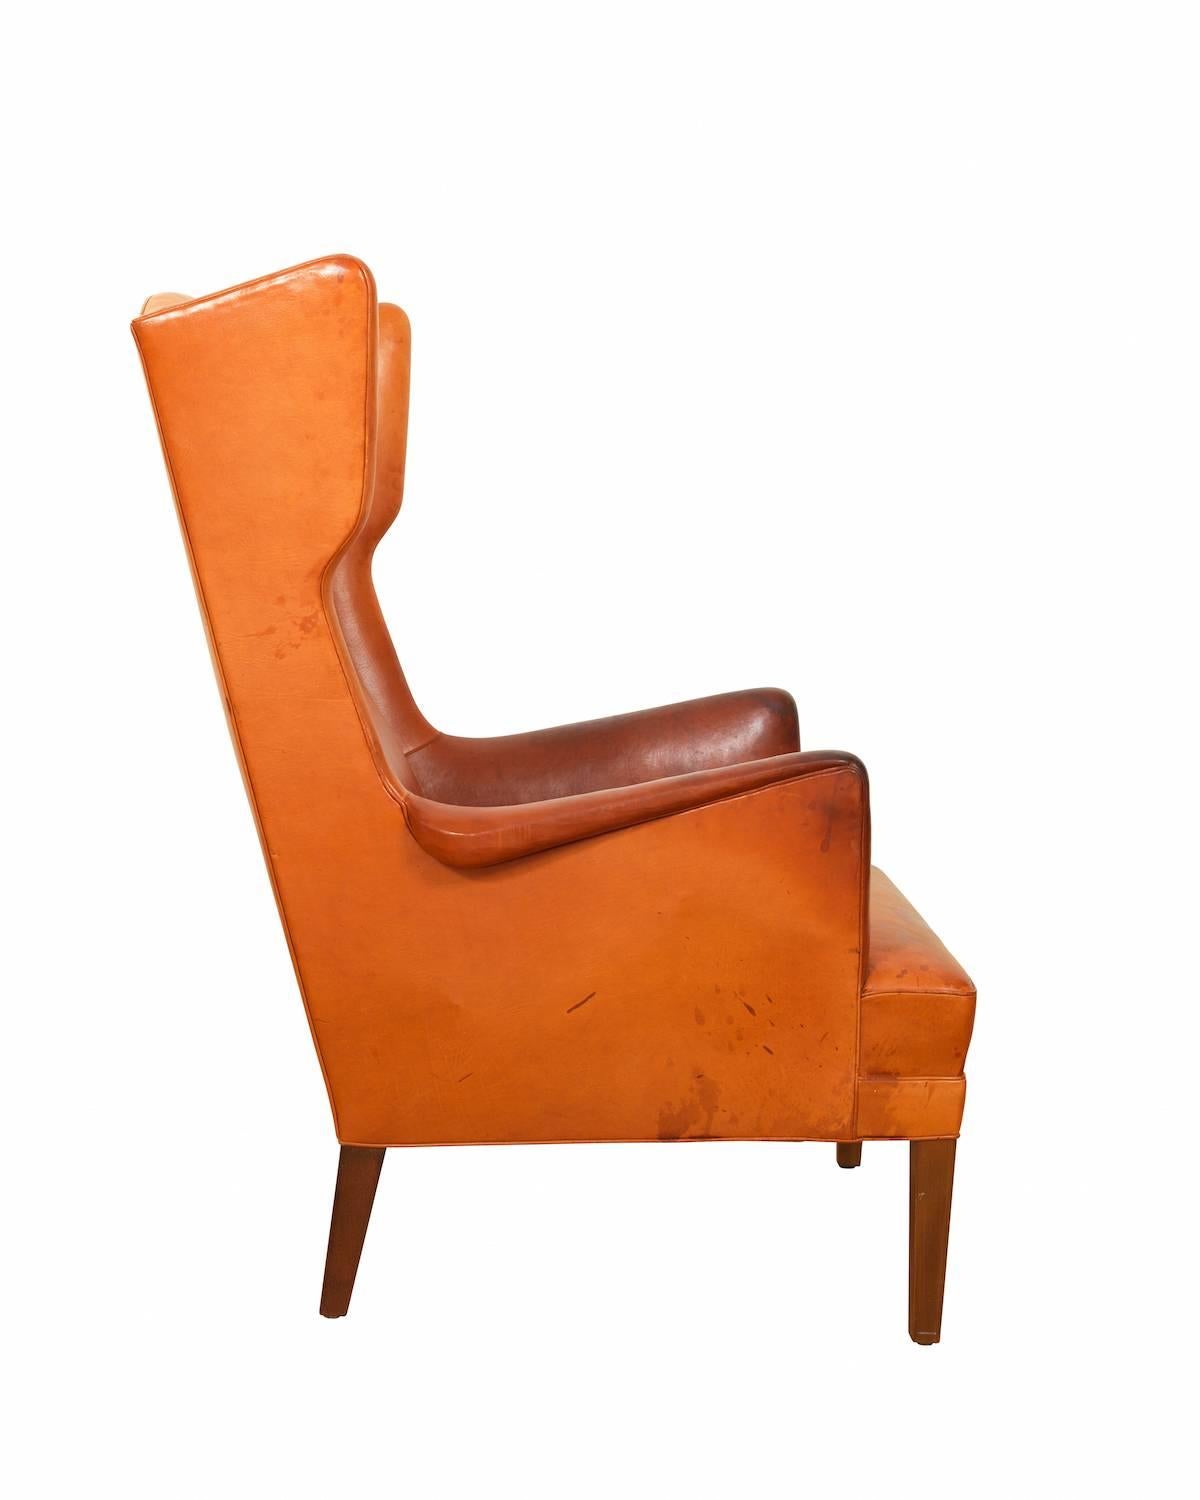 Scandinavian Modern Rare Wing Chair by Frits Henningsen